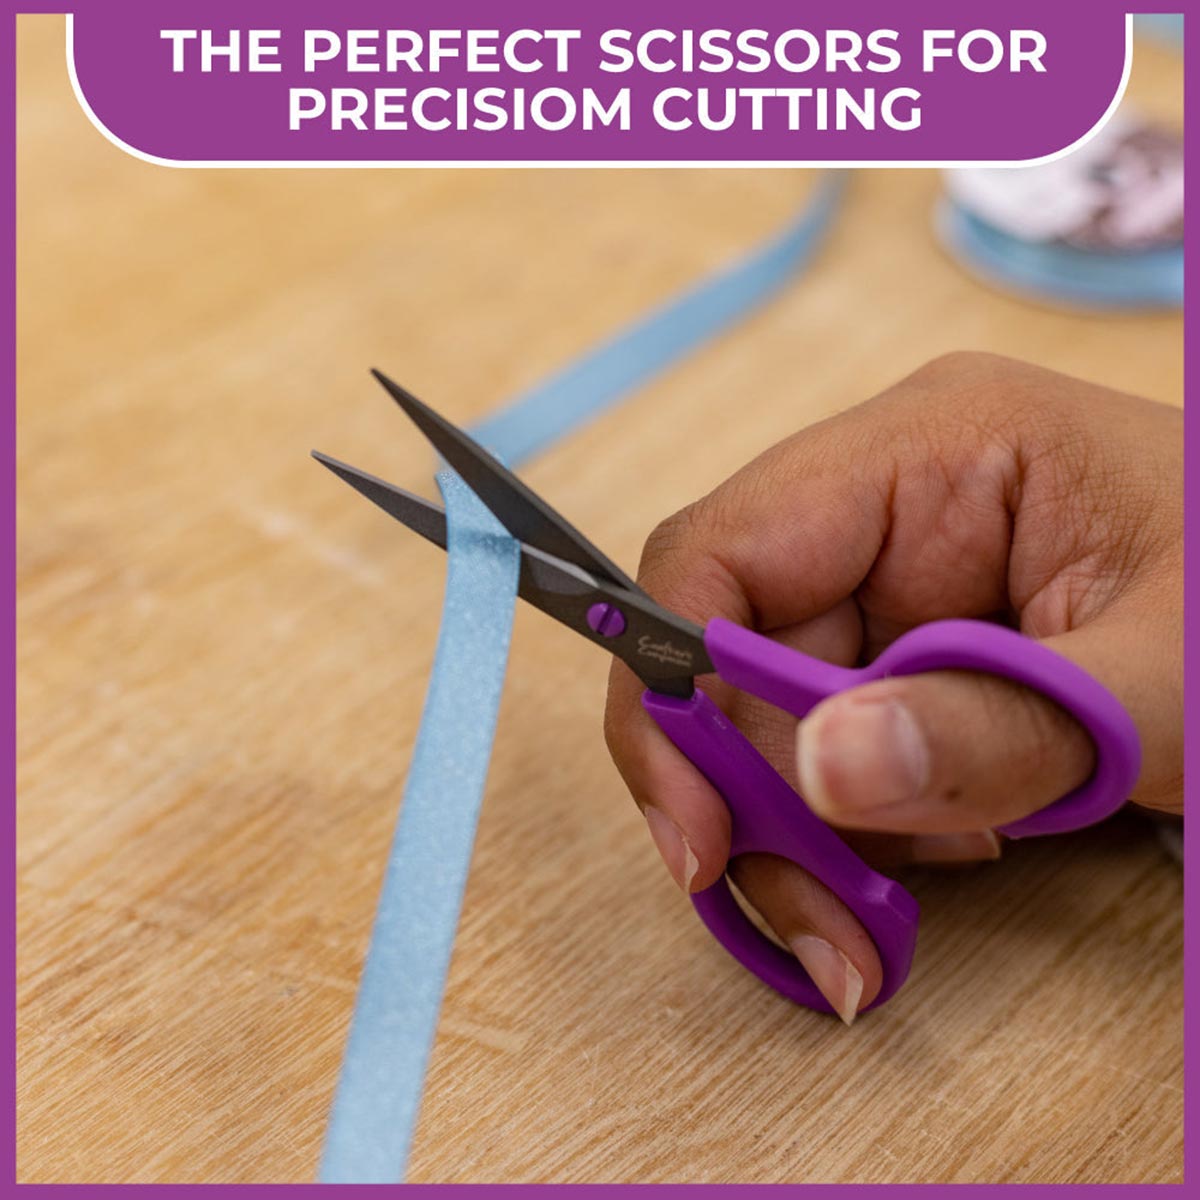 Crafter's Companion Scissors - 4.5" Precision Snips